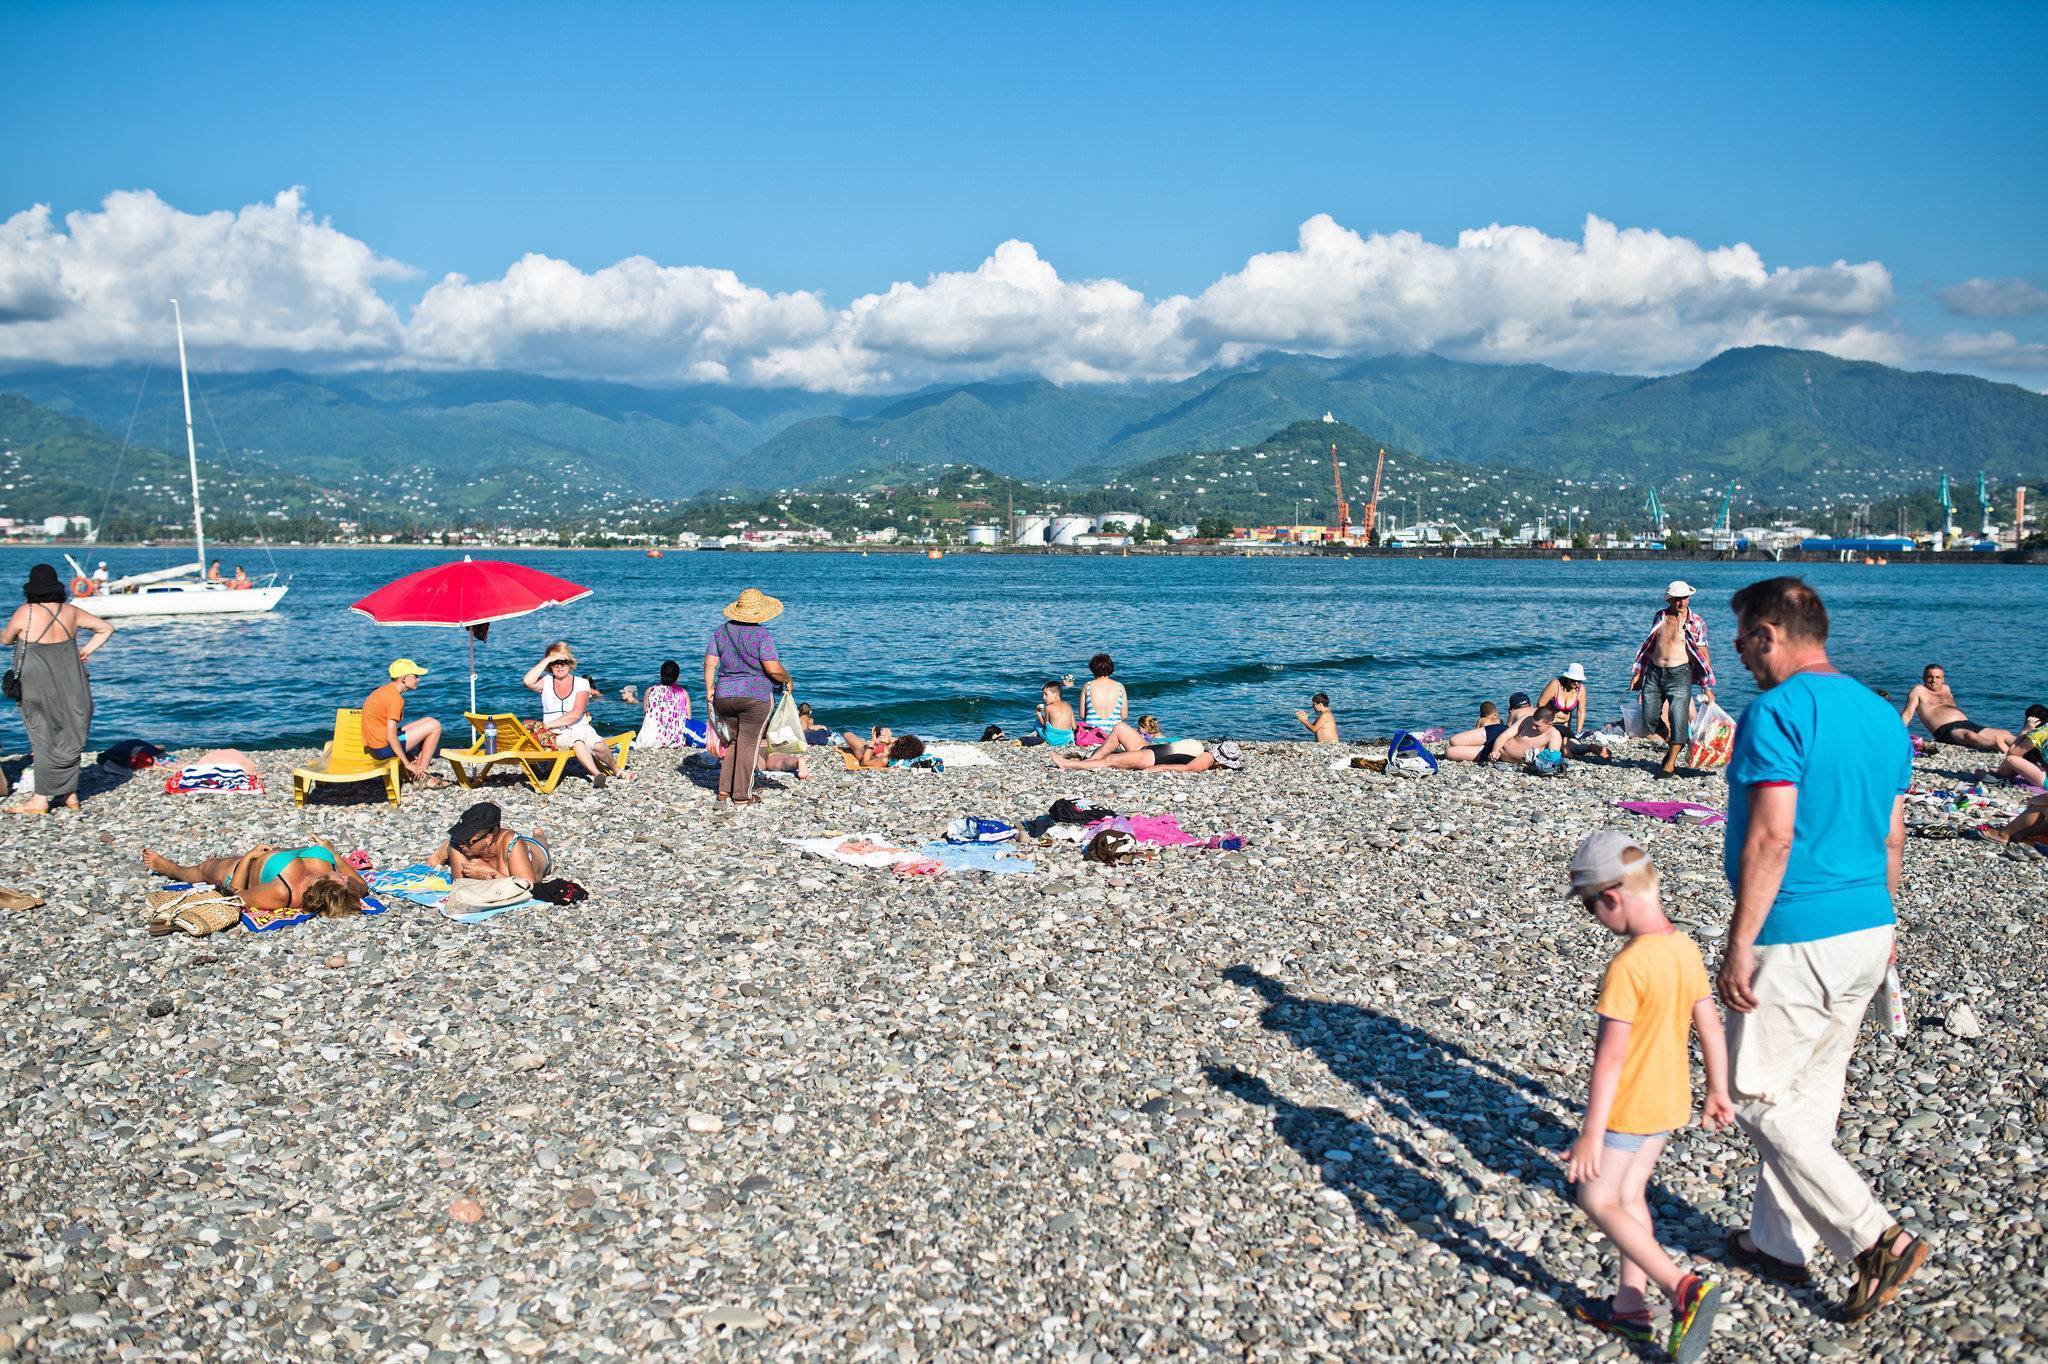 Отдых с детьми в грузии на море: лучшие курорты и песчаные пляжи - фото (сезон 2020)